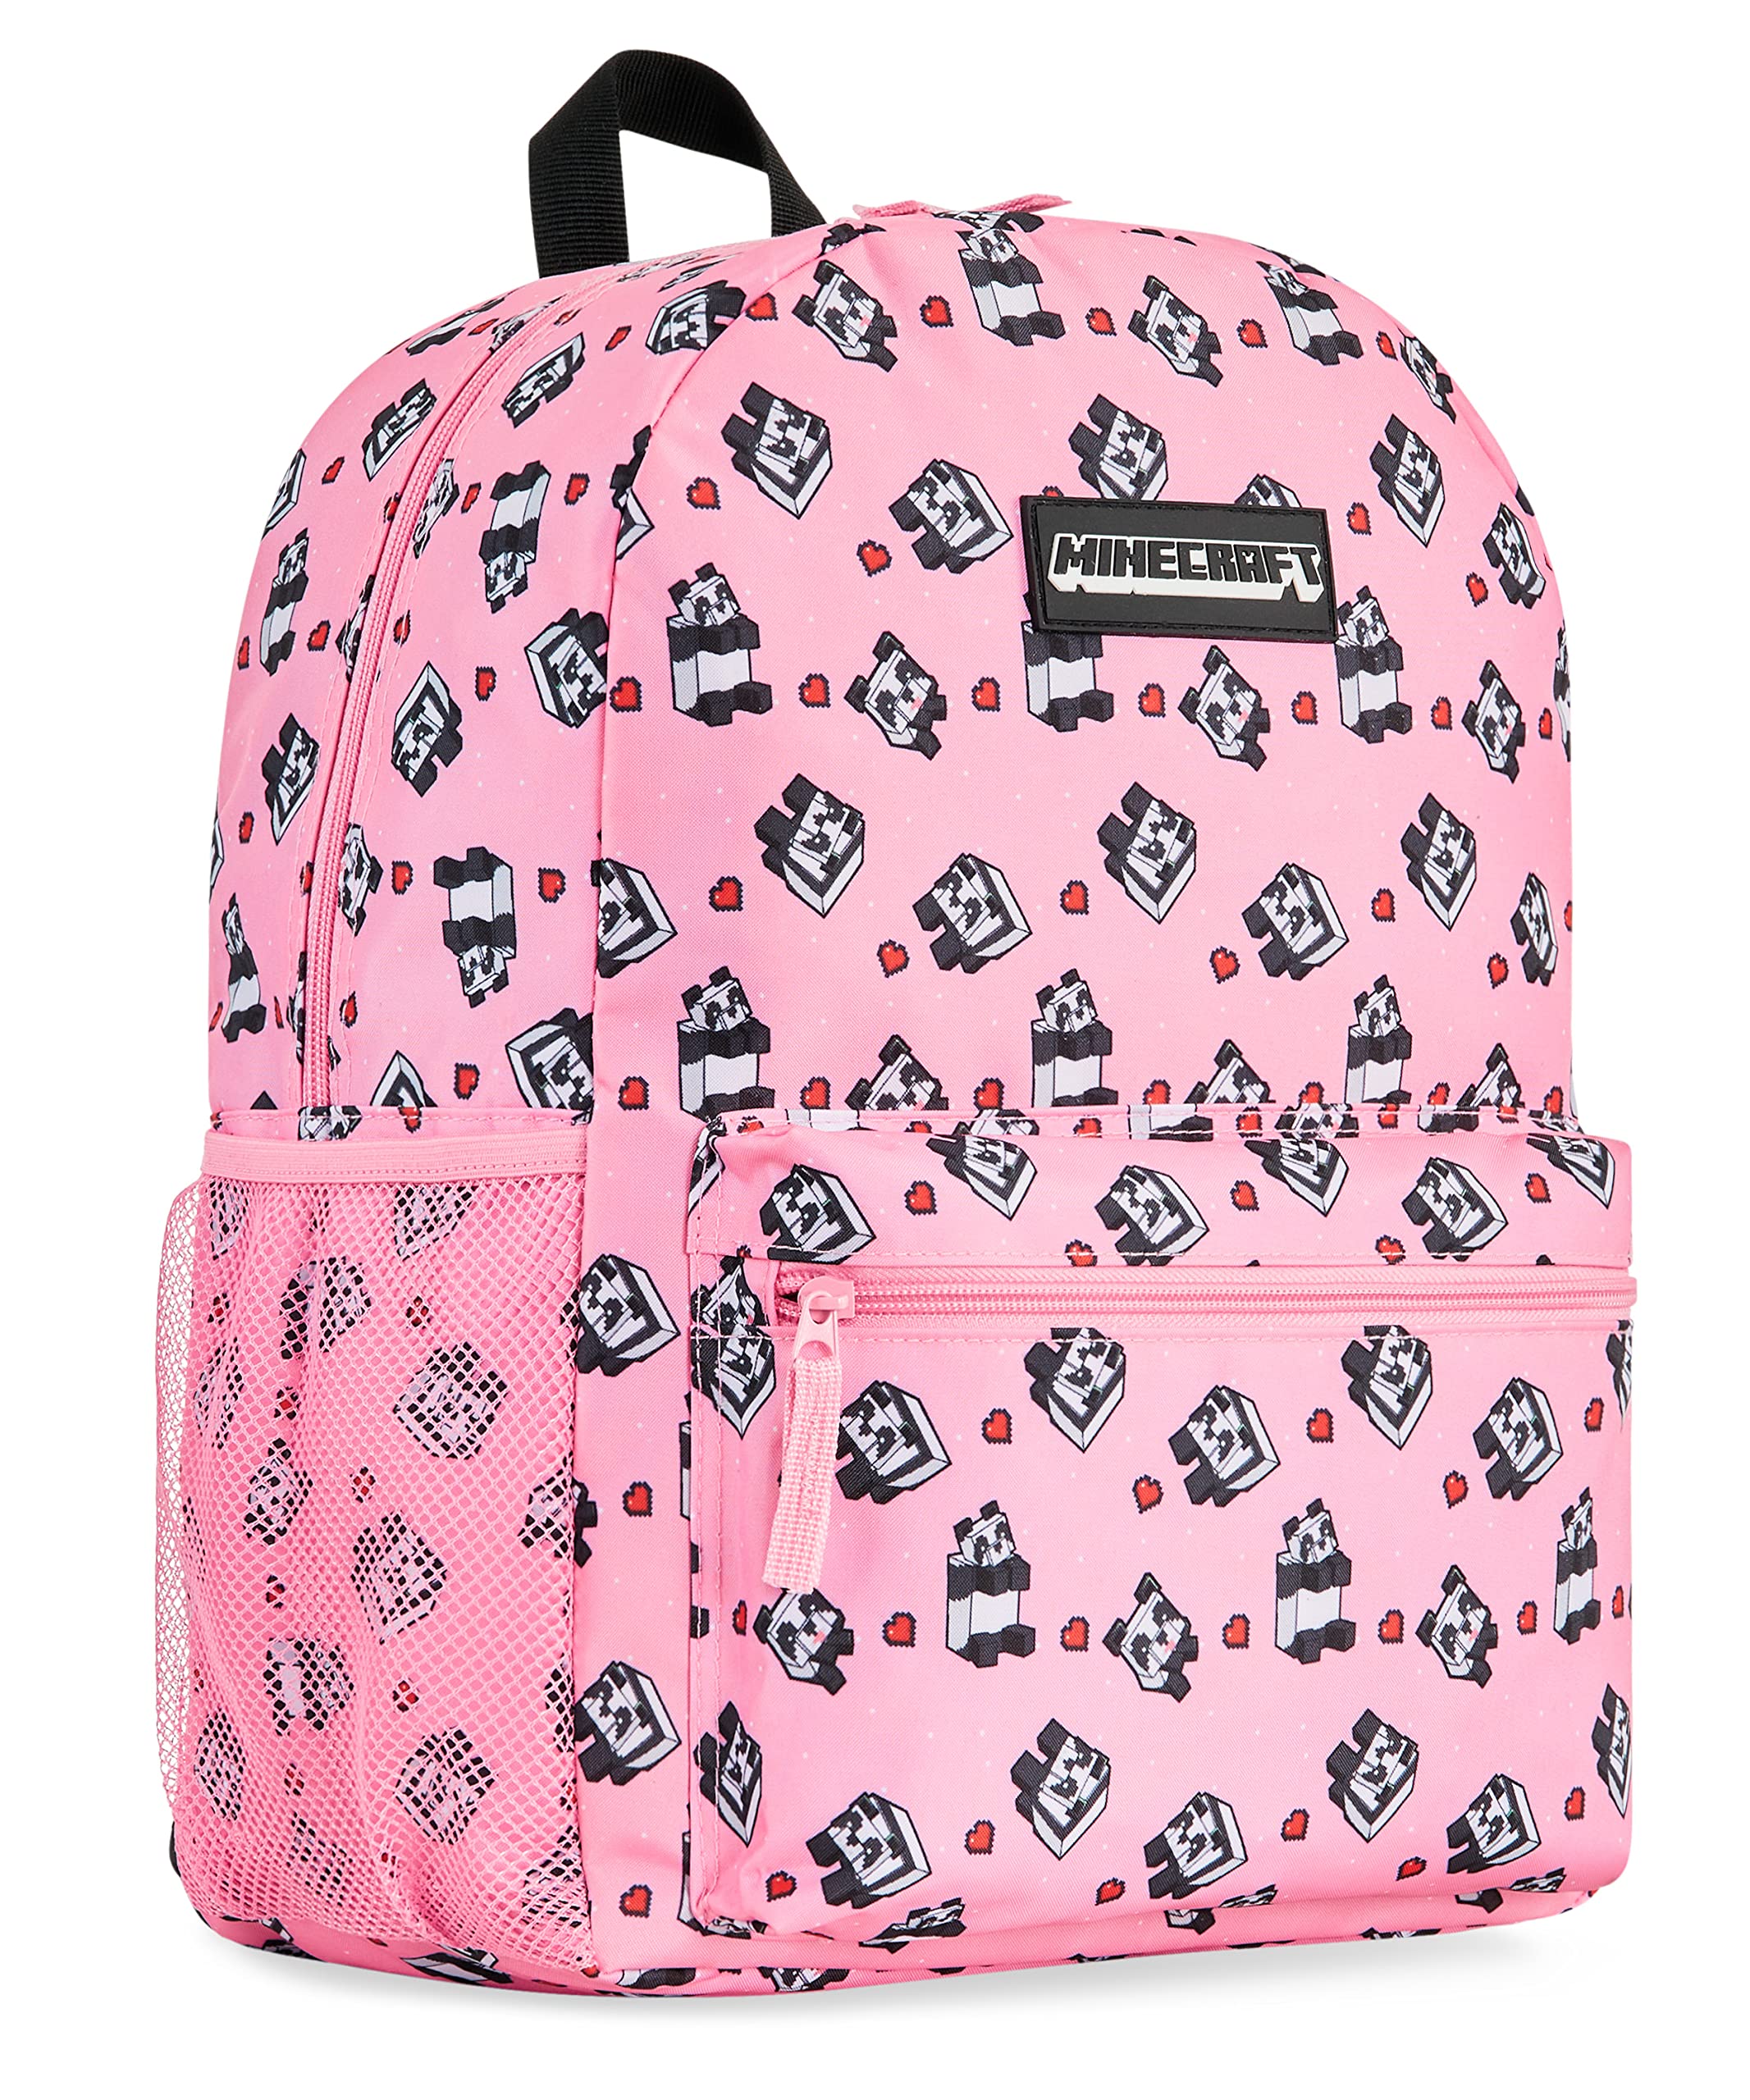 Minecraft Rucksack, School Bag mit Gepolsterten Trägern, Geräumig Kinder Rucksack, mit Großer Fronttasche & Netzflaschenhalter, Schul Rucksack für Jungen & Mädchen, 39 x 29 x 16 cm, Pink